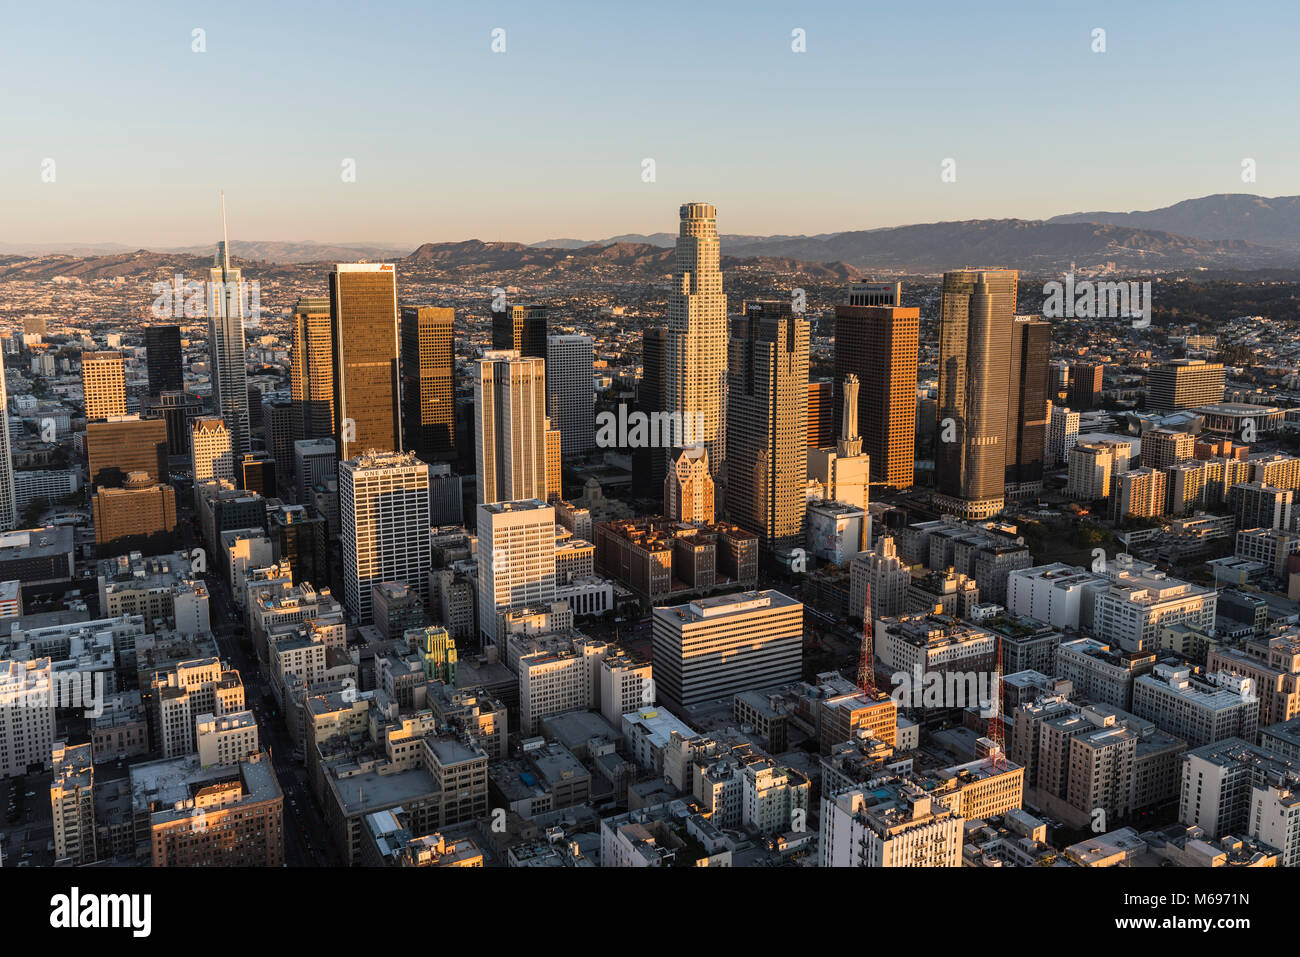 Los Angeles, California, Stati Uniti d'America - 20 Febbraio 2018: la mattina presto vista aerea delle torri, le strade e gli edifici del nucleo urbano del centro cittadino di Los Angeles. Foto Stock